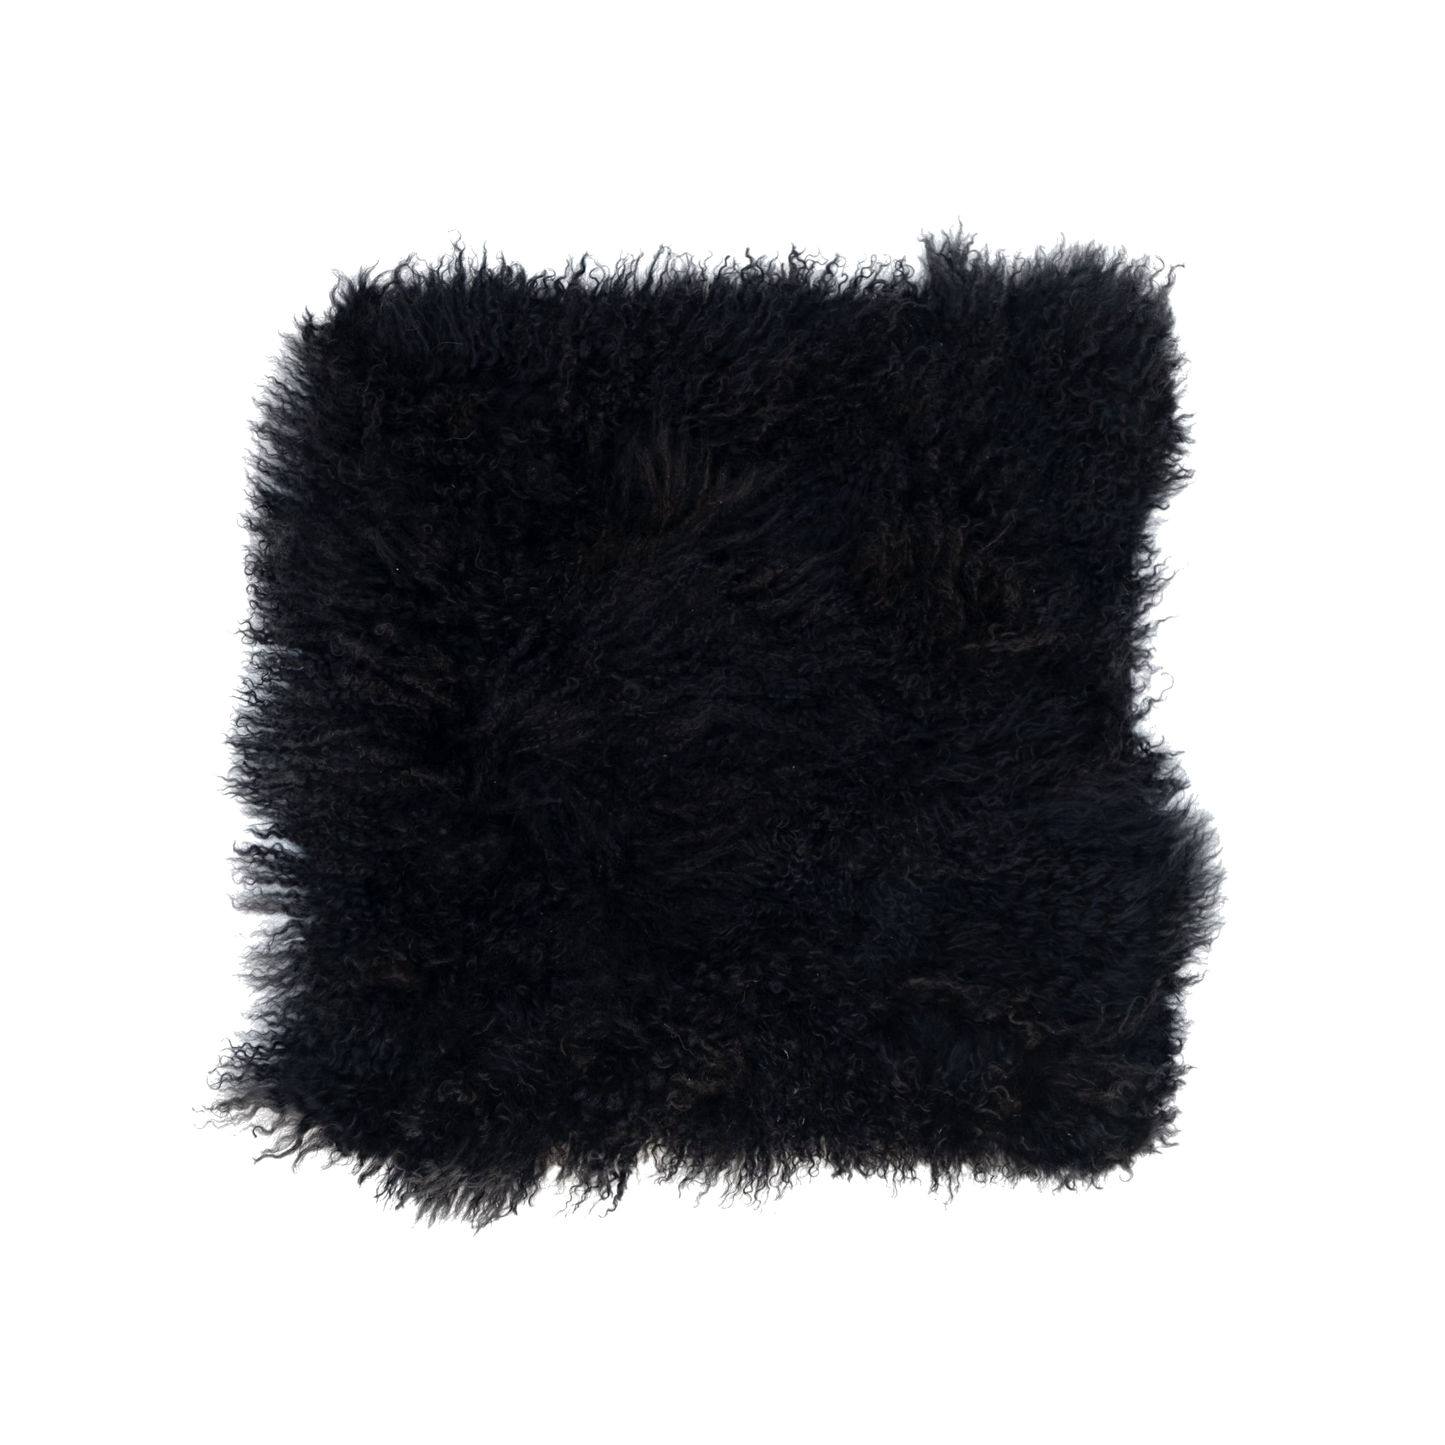 100% Natural Mongolian Sheepskin Cushion Covers - Large, Grey